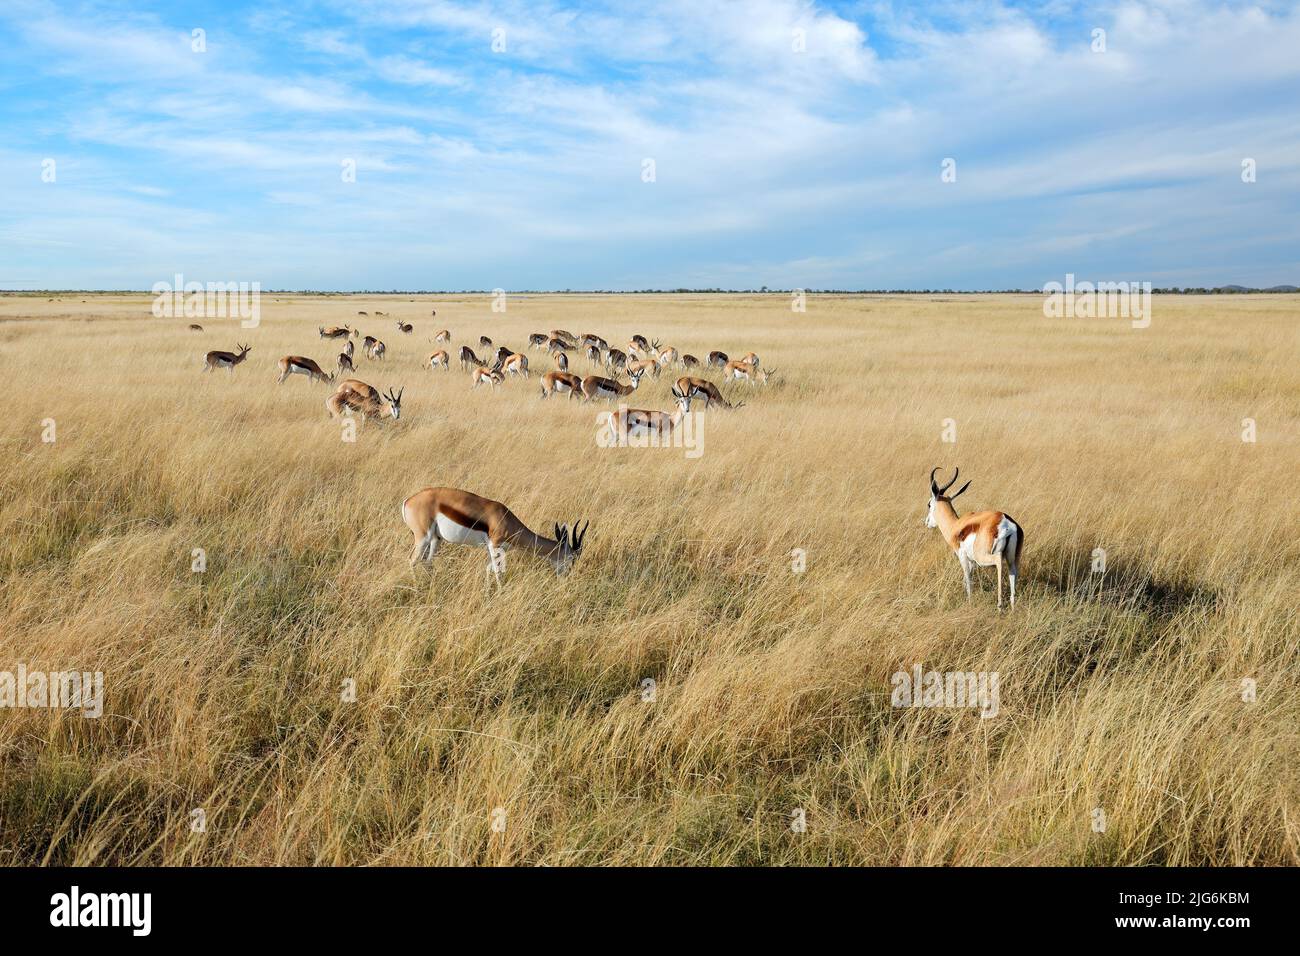 Springbok antelopes (Antidorcas marsupialis) in open grassland, Etosha National Park, Namibia Stock Photo